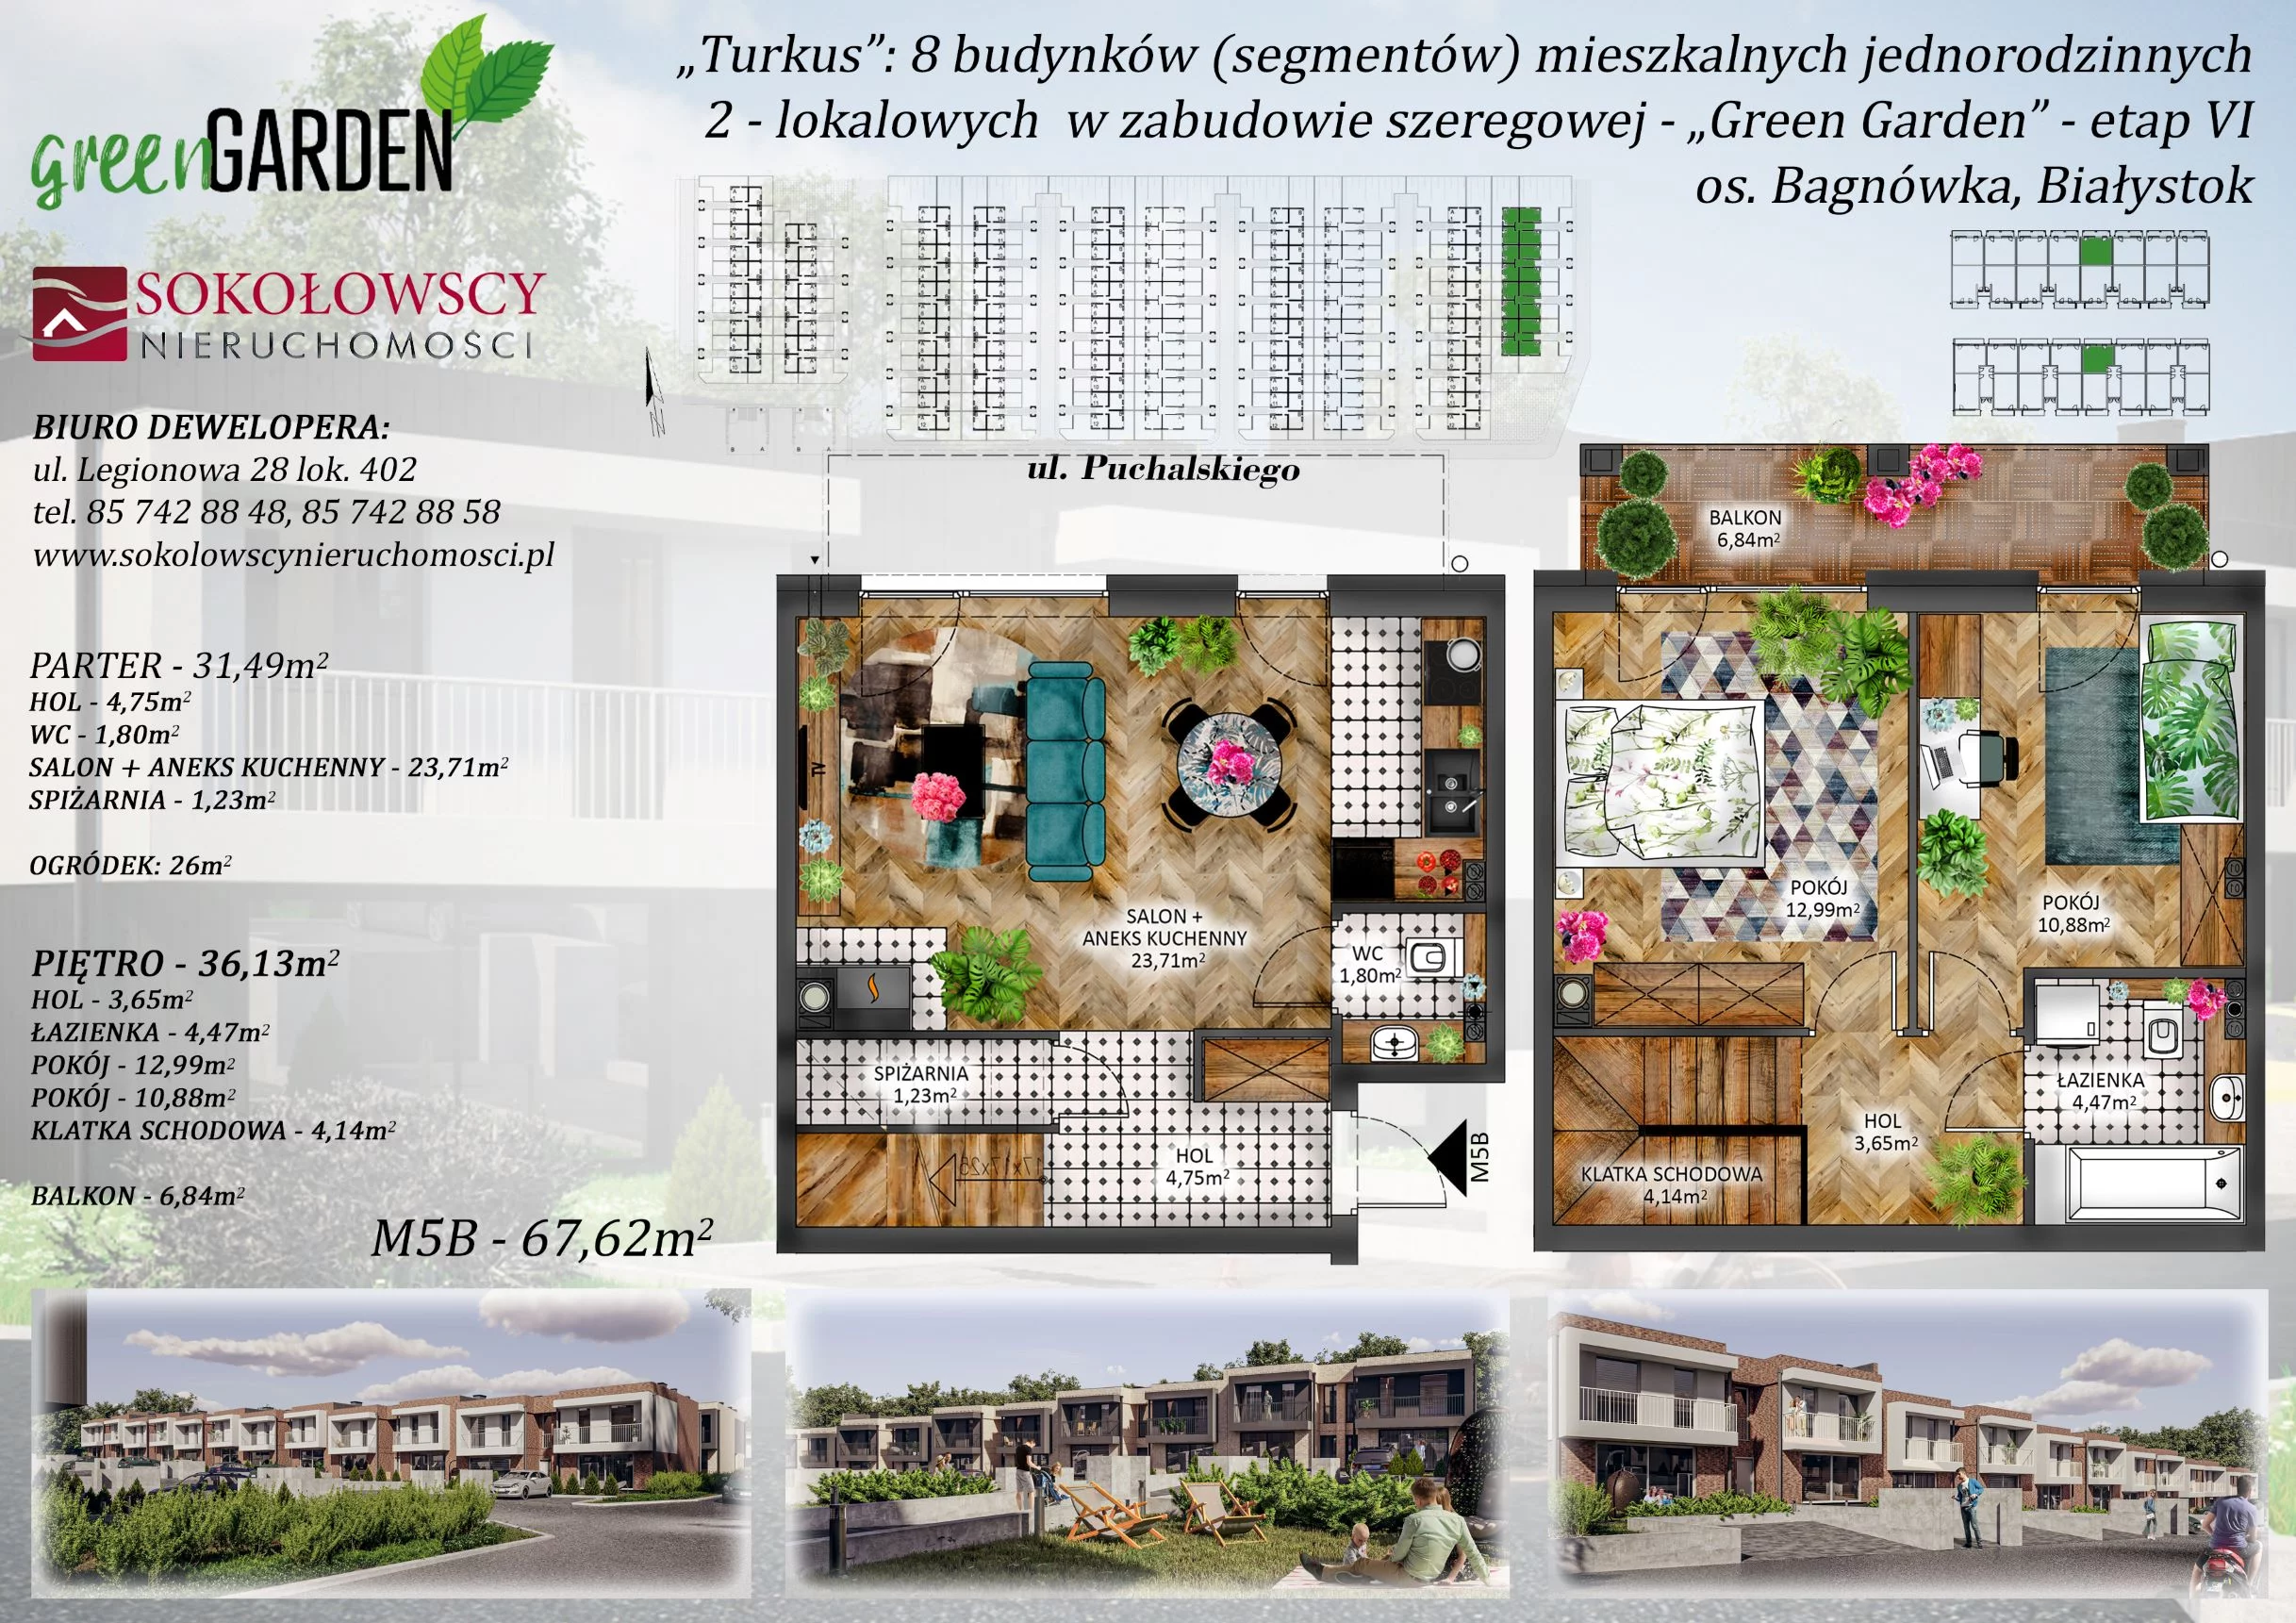 Mieszkanie 67,62 m², parter, oferta nr 5B, Green Garden etap 6, Białystok, Bagnówka, ul. Karola Puchalskiego